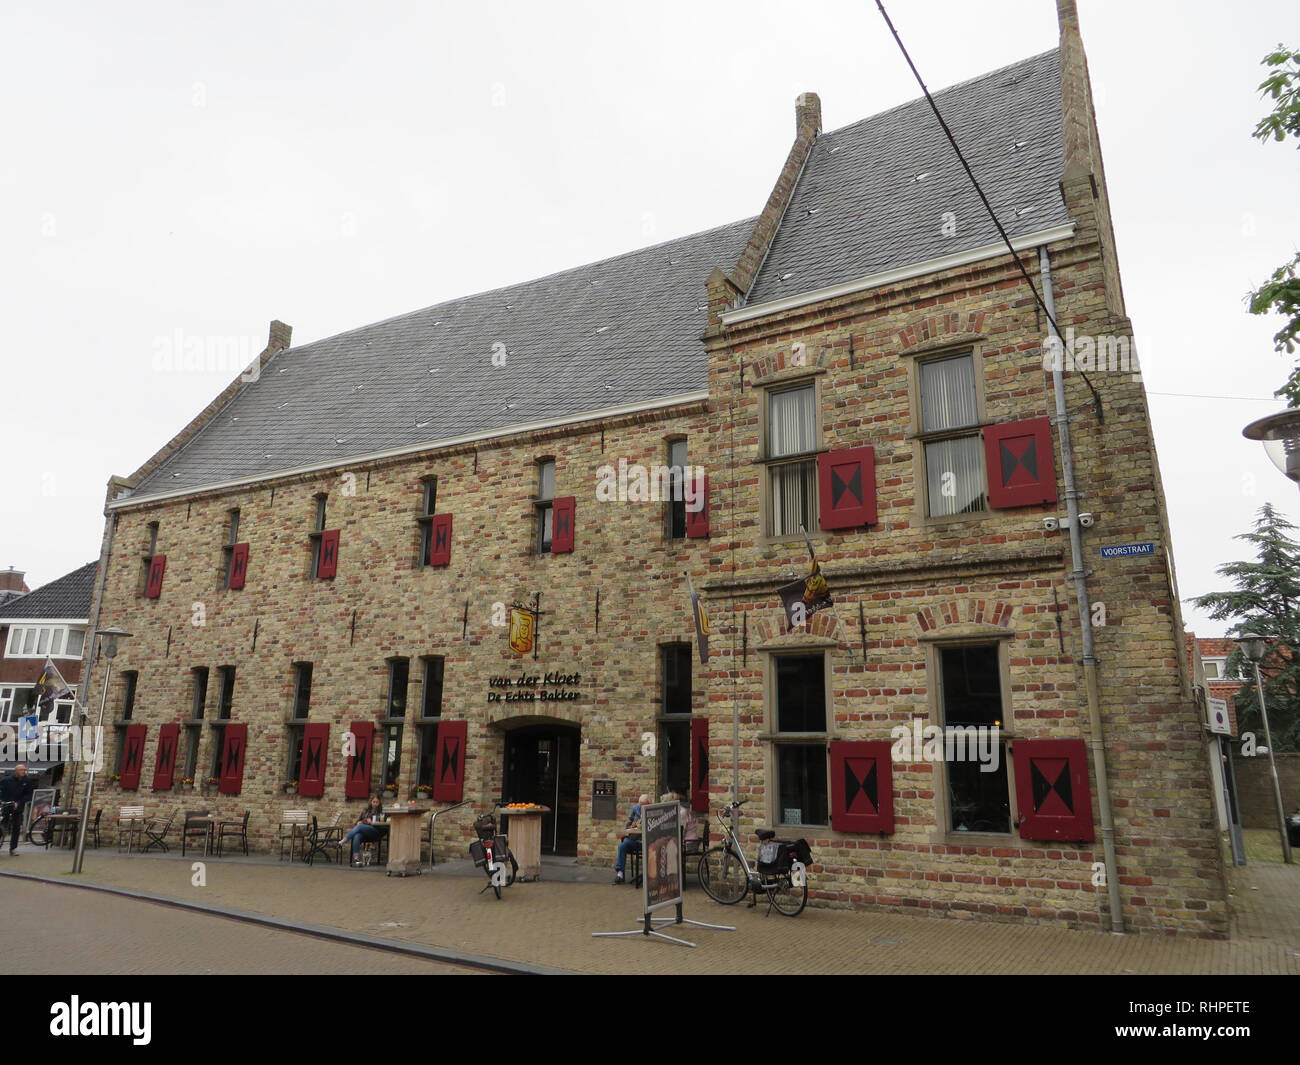 Traditional dutch building. De echte bakker / The real baker Van der Kloet Stock Photo